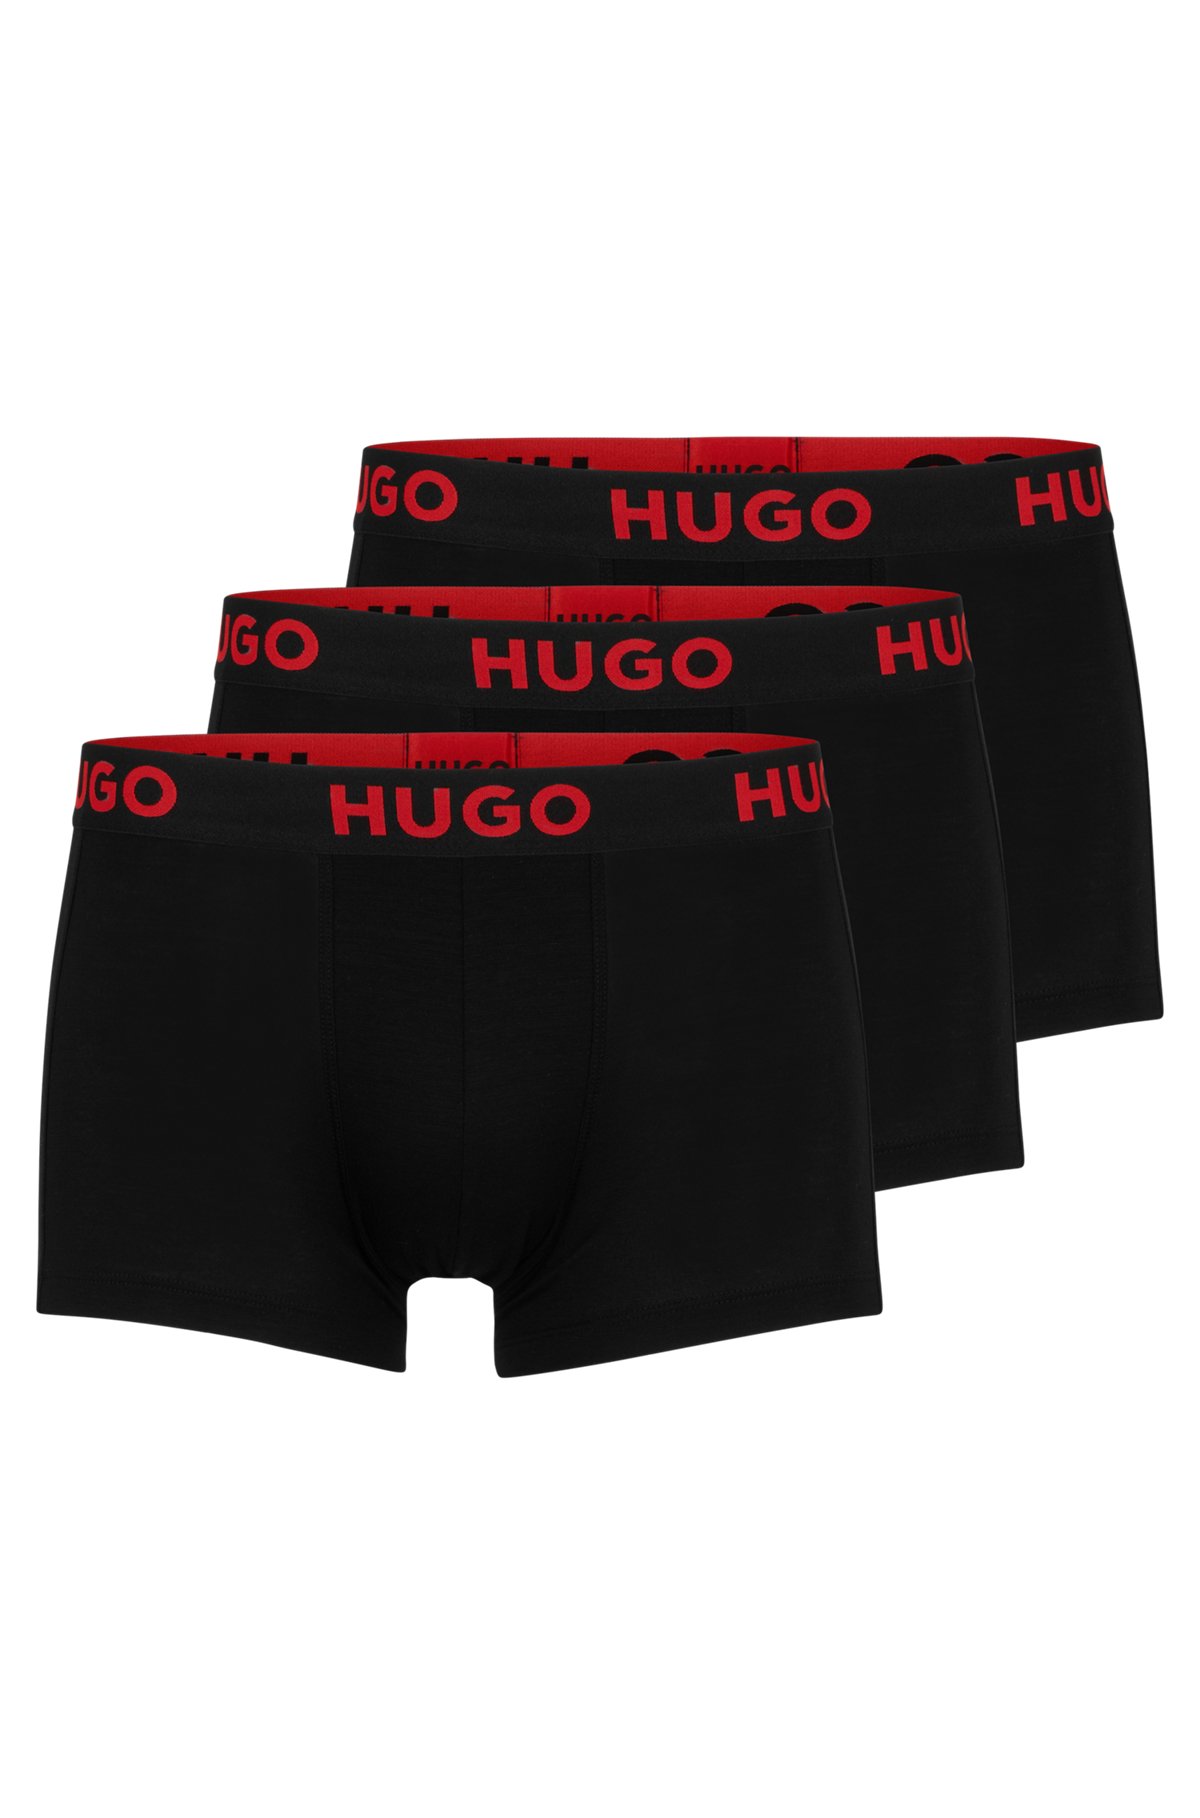 Hugo Boss 3 PACK - pánske boxerky HUGO 50496723-001 XL